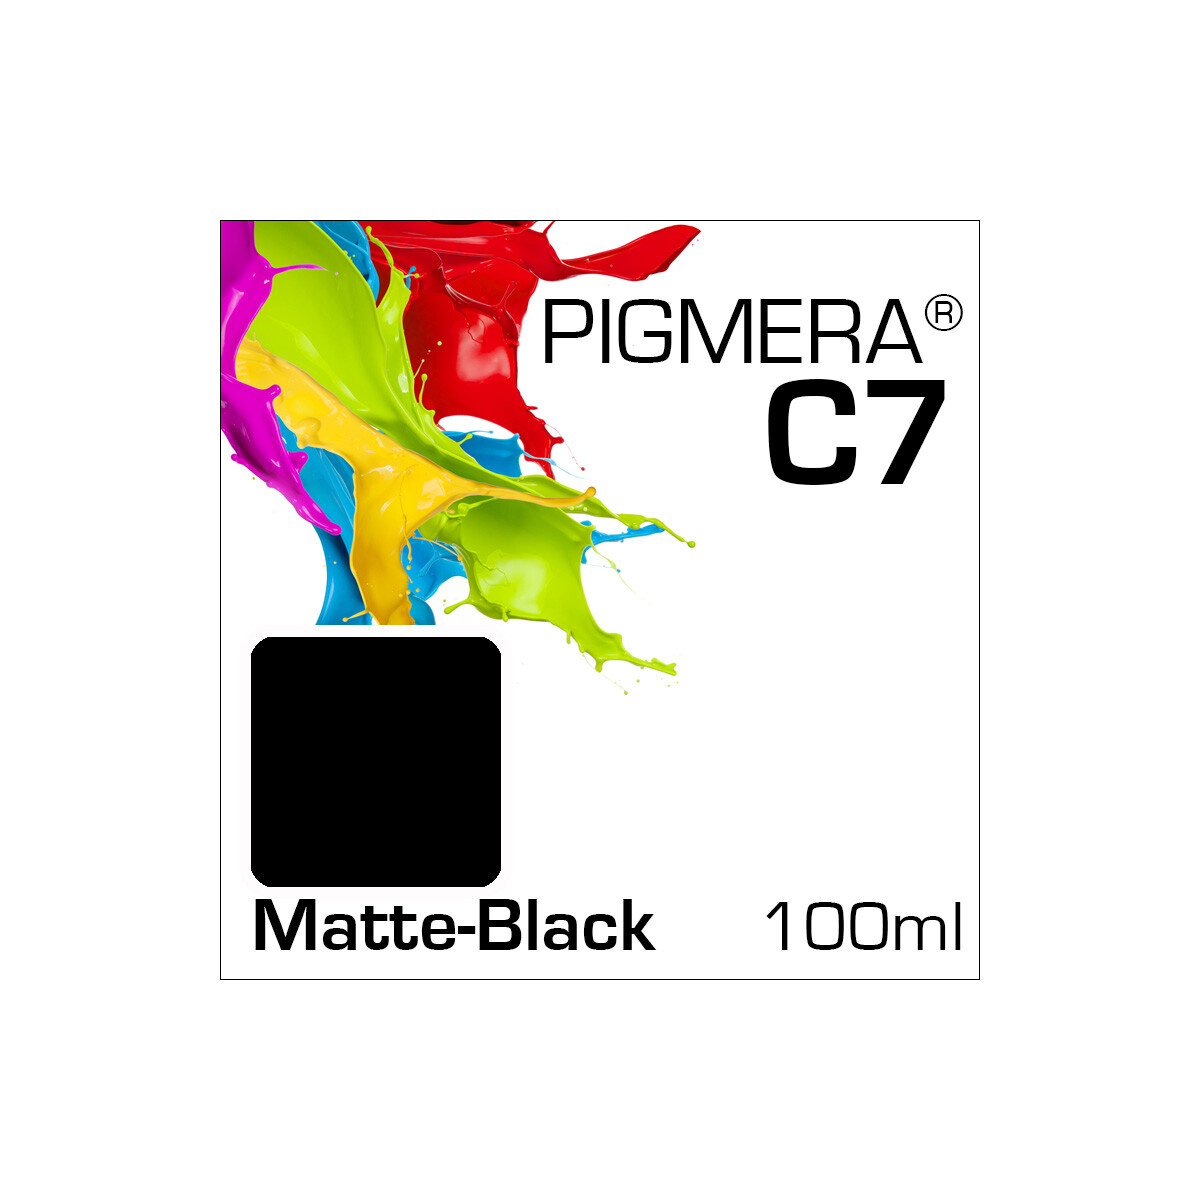 Pigmera C7 Bottle 100ml Matte-Black (Abverkauf)